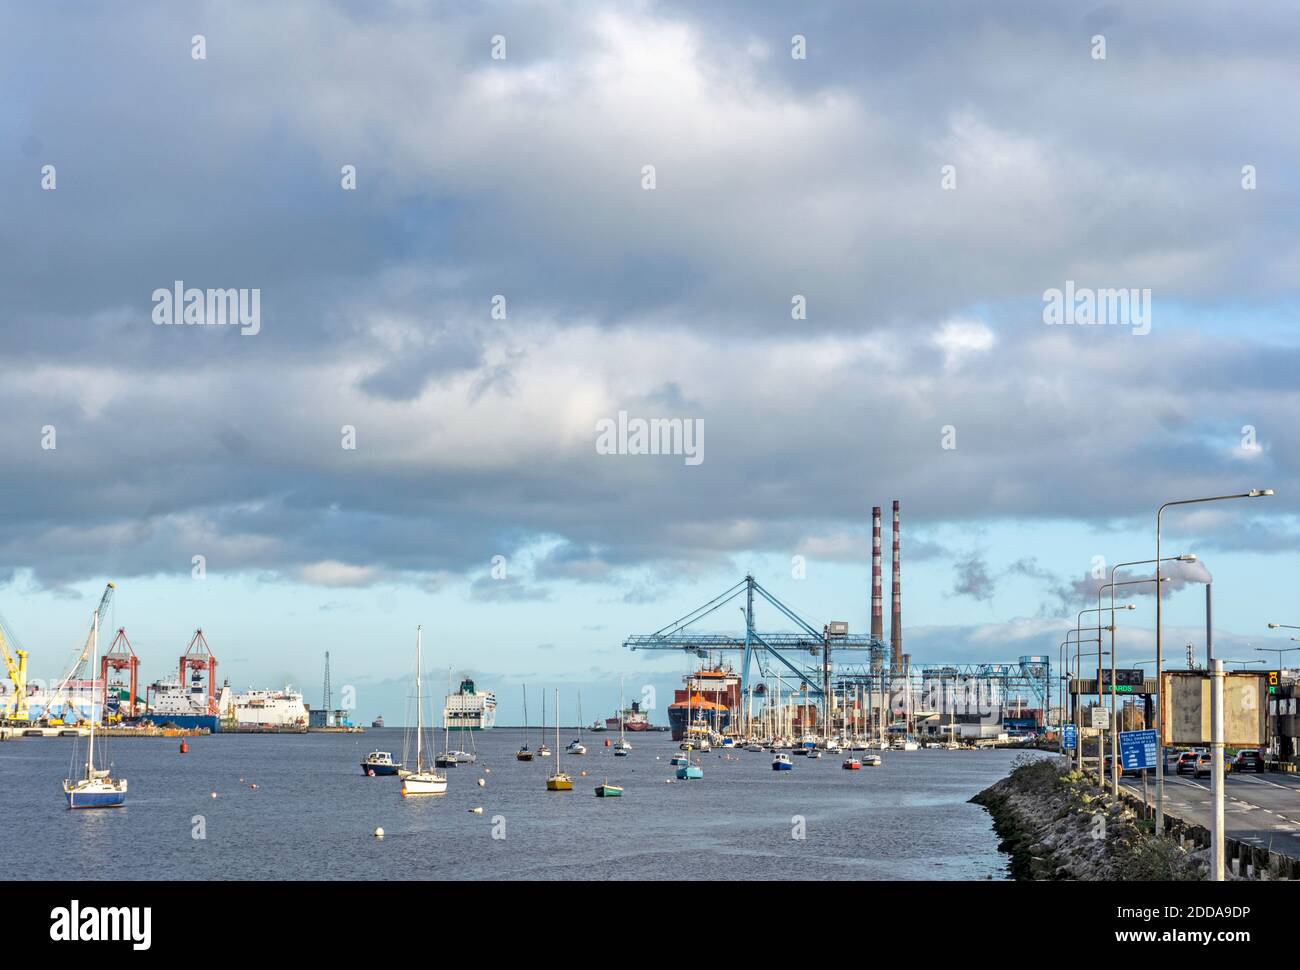 Porto di Dublino, Irlanda, con una gru a portale in funzione, un traghetto passeggeri in partenza, piccole barche e l'East link Ferry Bridge. Foto Stock